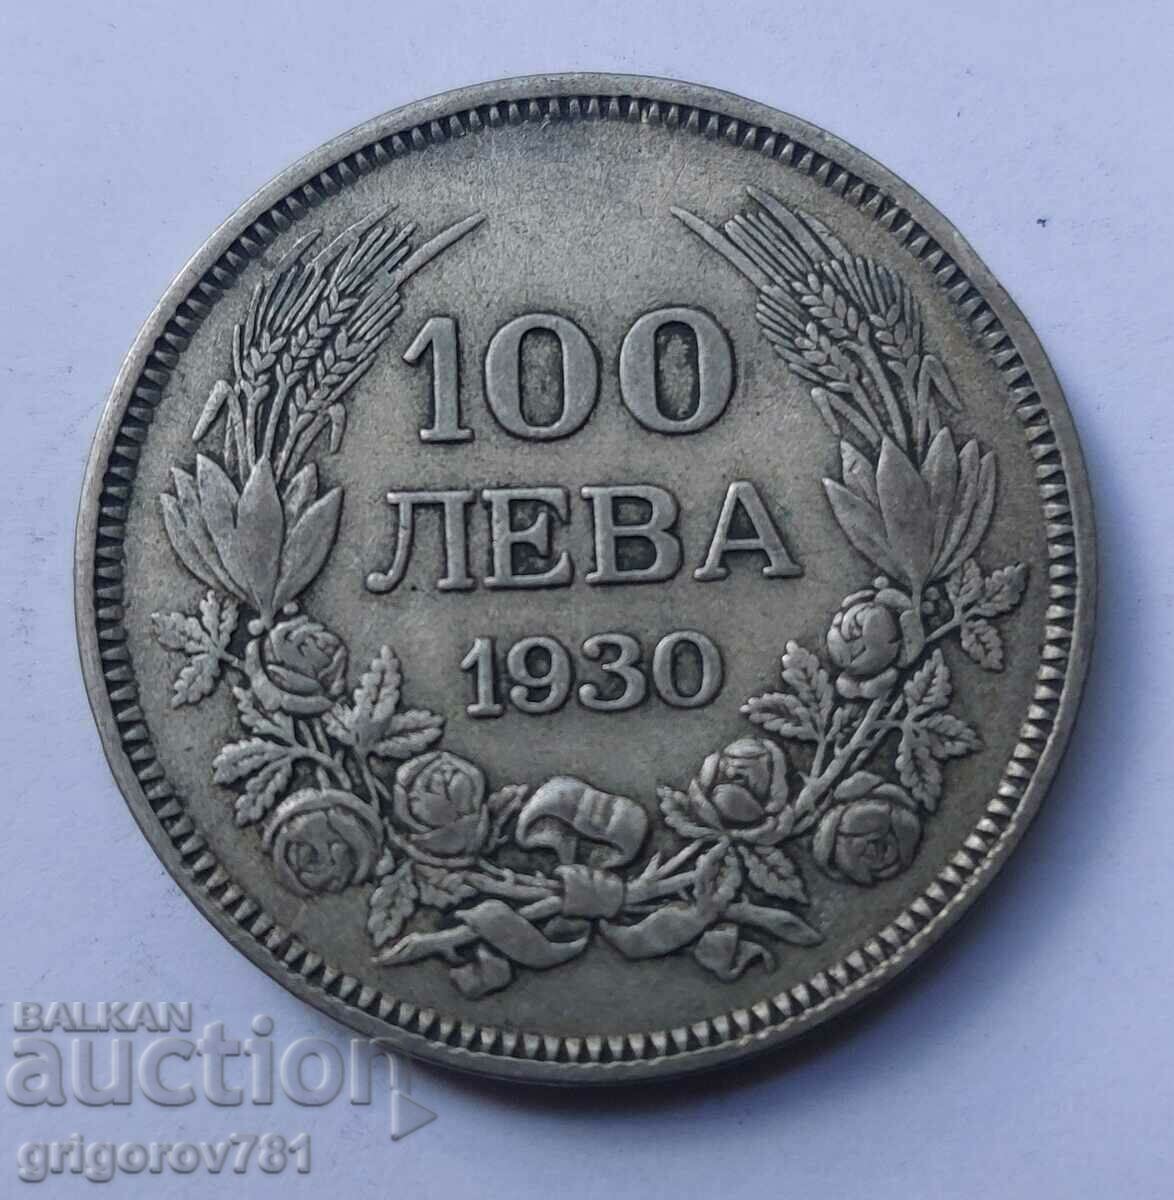 Ασήμι 100 λέβα Βουλγαρία 1930 - ασημένιο νόμισμα #37